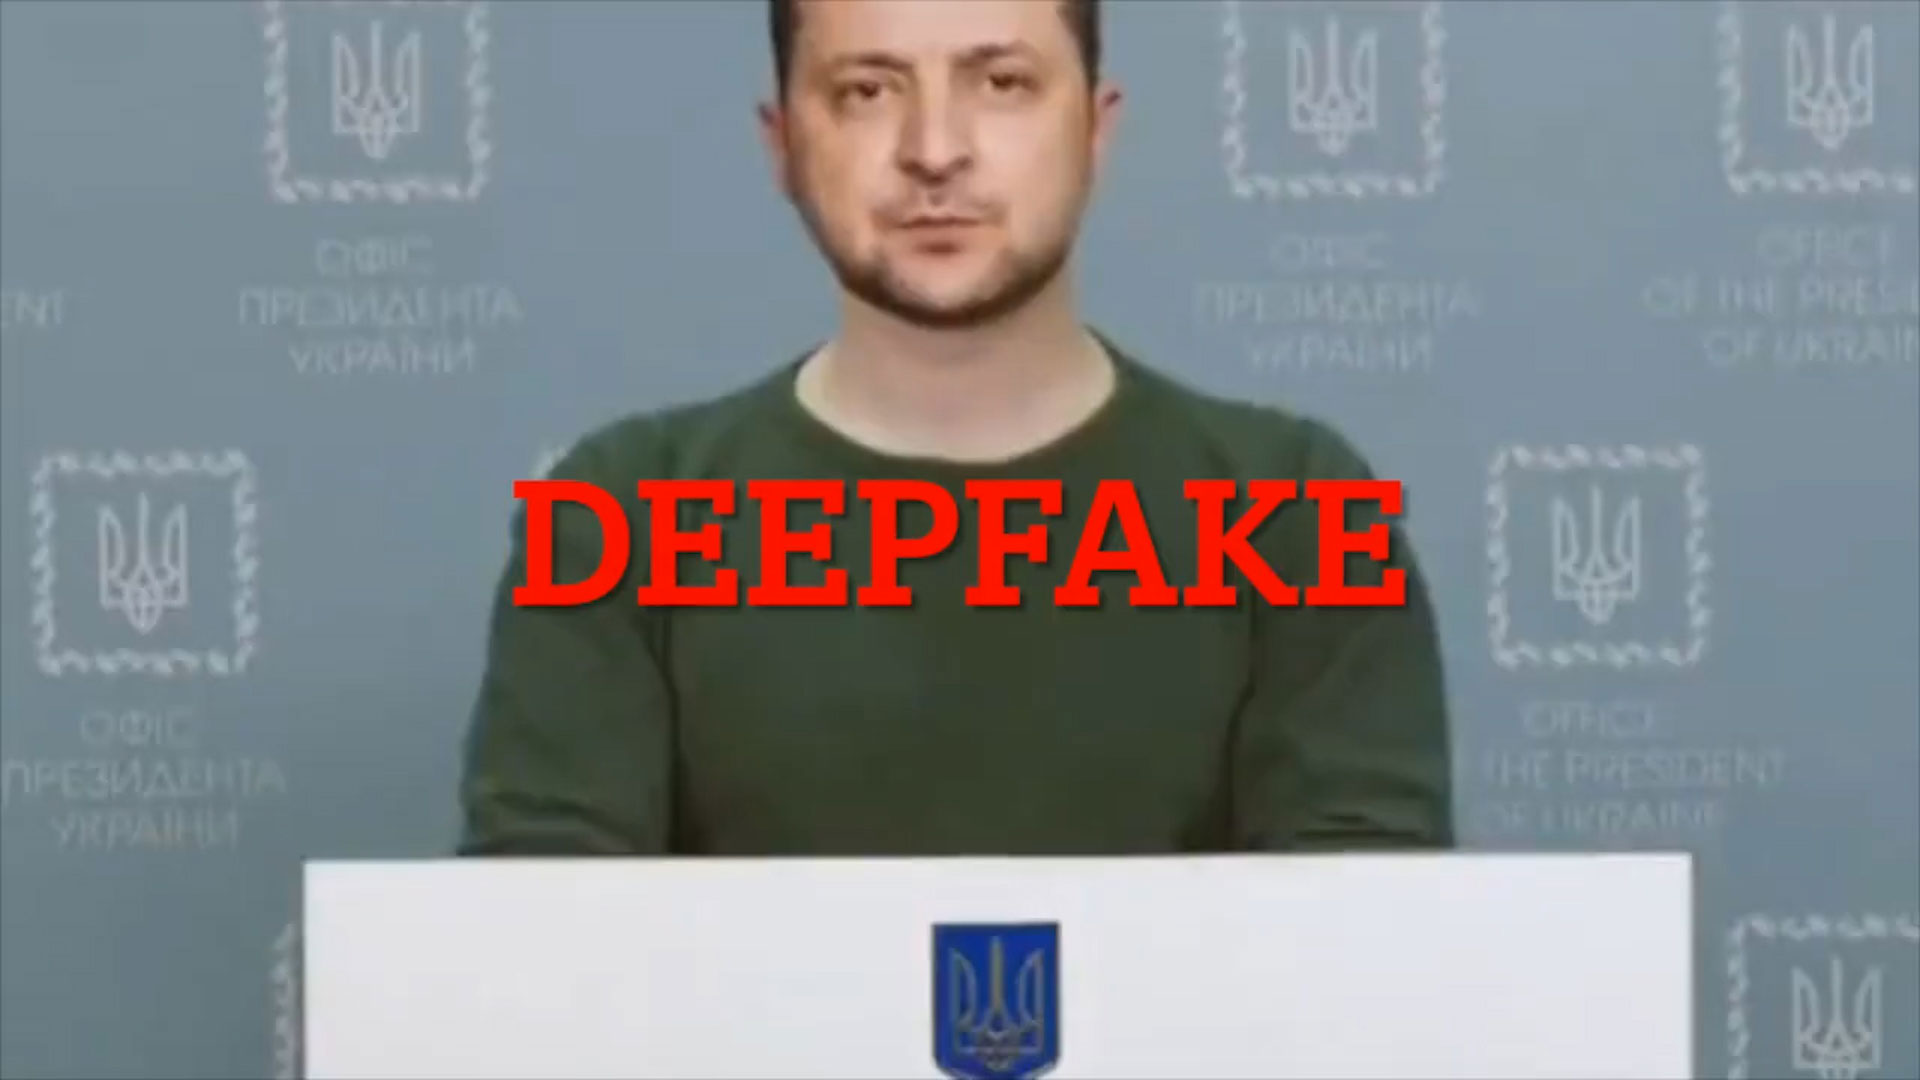 Otro mal uso de esta técnica se produjo al inicio de la guerra cuando se hackeó una cadena de televisión ucraniana y se emitió un video falso, en el que el presidente Volodímir Zelensky llamaba a los ucranianos a rendirse